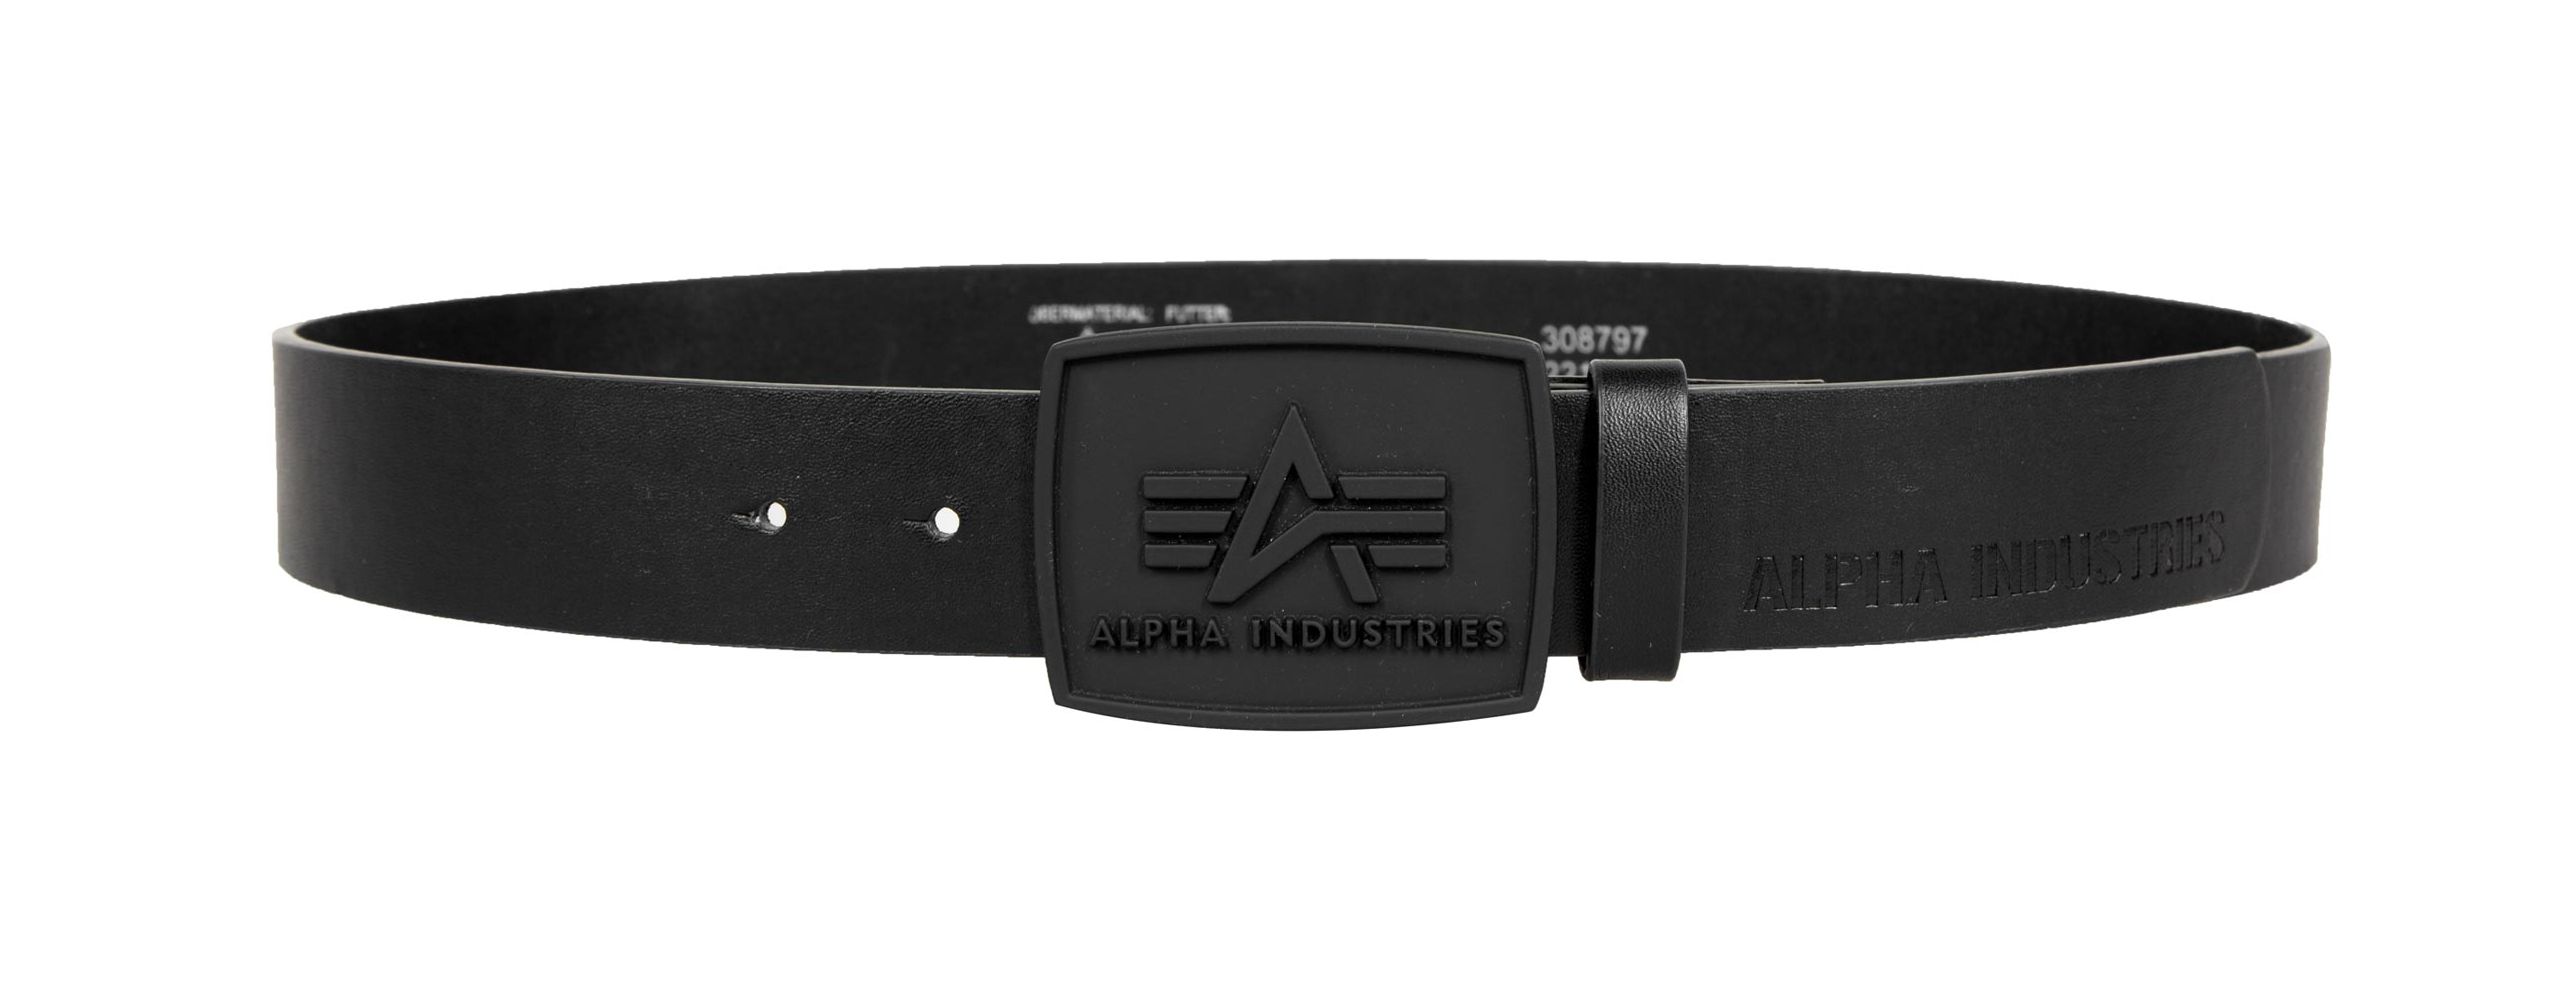 Alpha Industries All Black Belt Gürtel Black | Belts / Buckles | Men |  Lifestyle | Gürtel